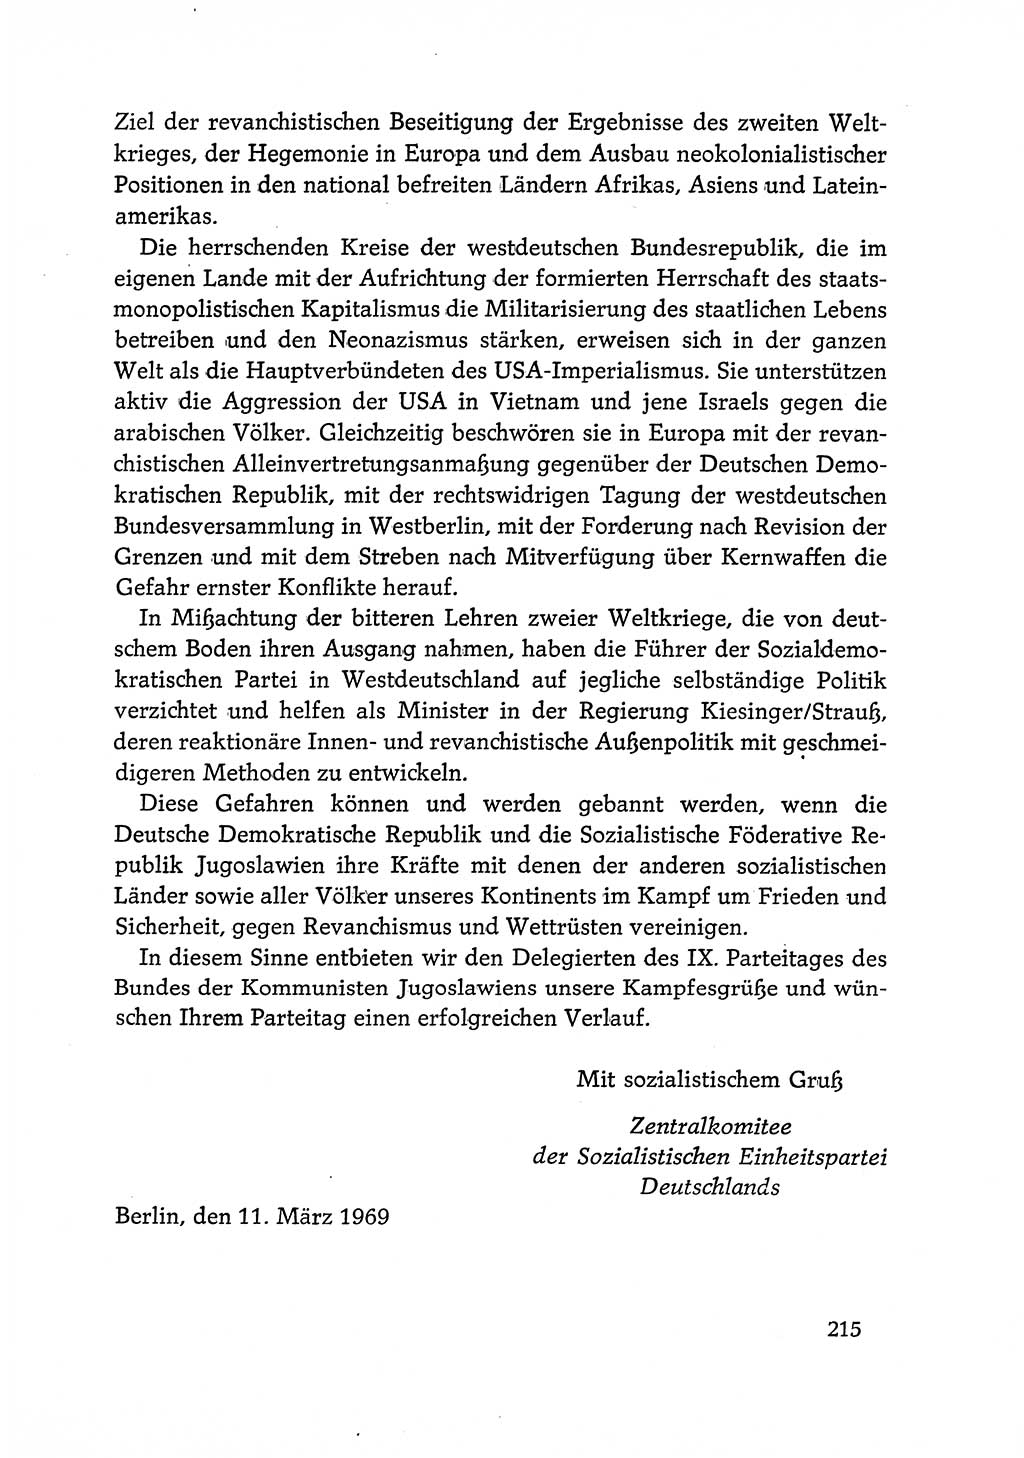 Dokumente der Sozialistischen Einheitspartei Deutschlands (SED) [Deutsche Demokratische Republik (DDR)] 1968-1969, Seite 215 (Dok. SED DDR 1968-1969, S. 215)